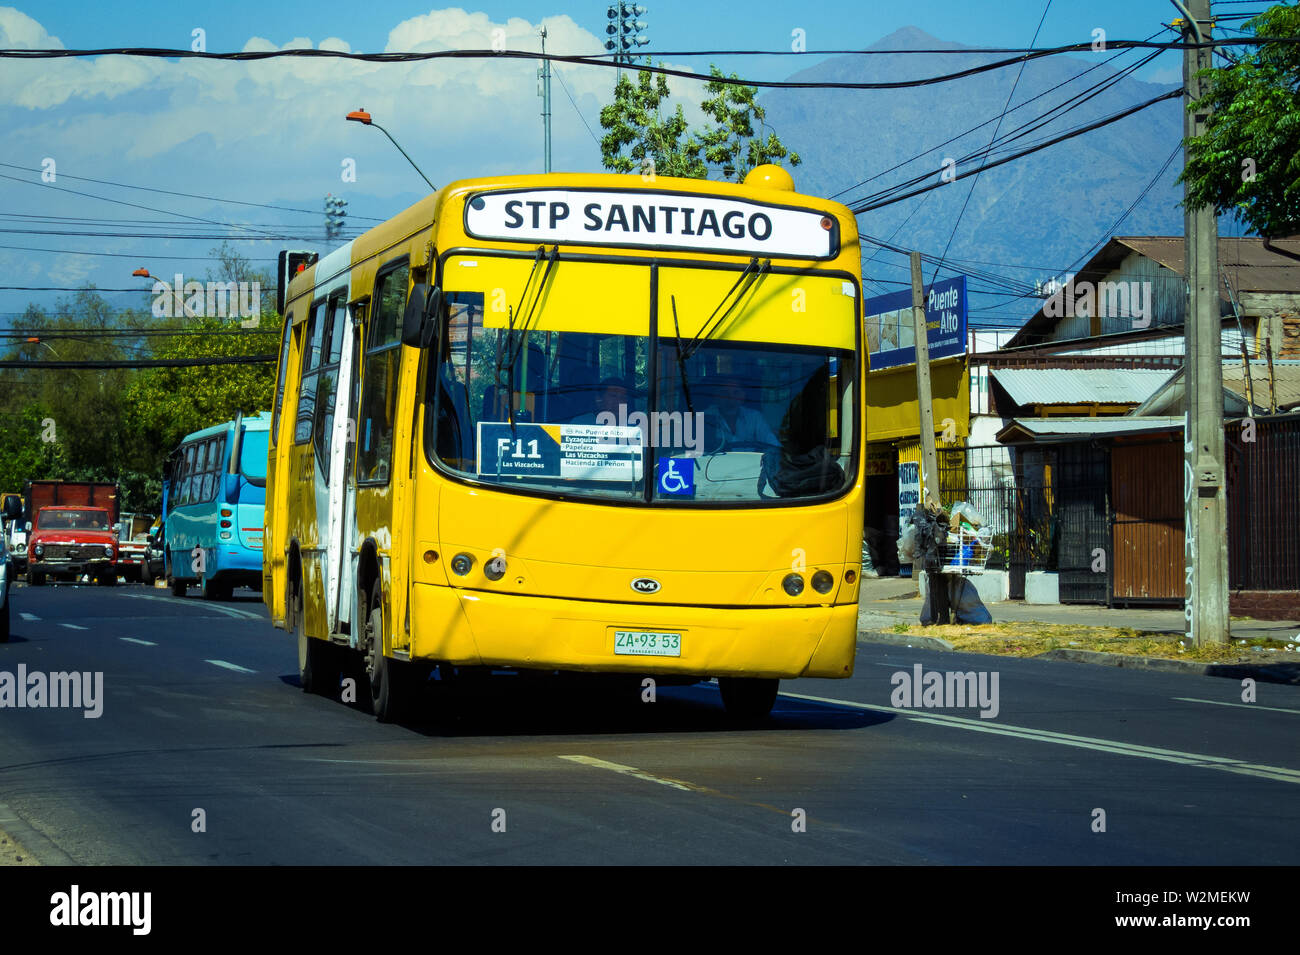 SANTIAGO, CHILE - NOVEMBER 2014: A yellow Transantiago bus in Puente Alto Stock Photo